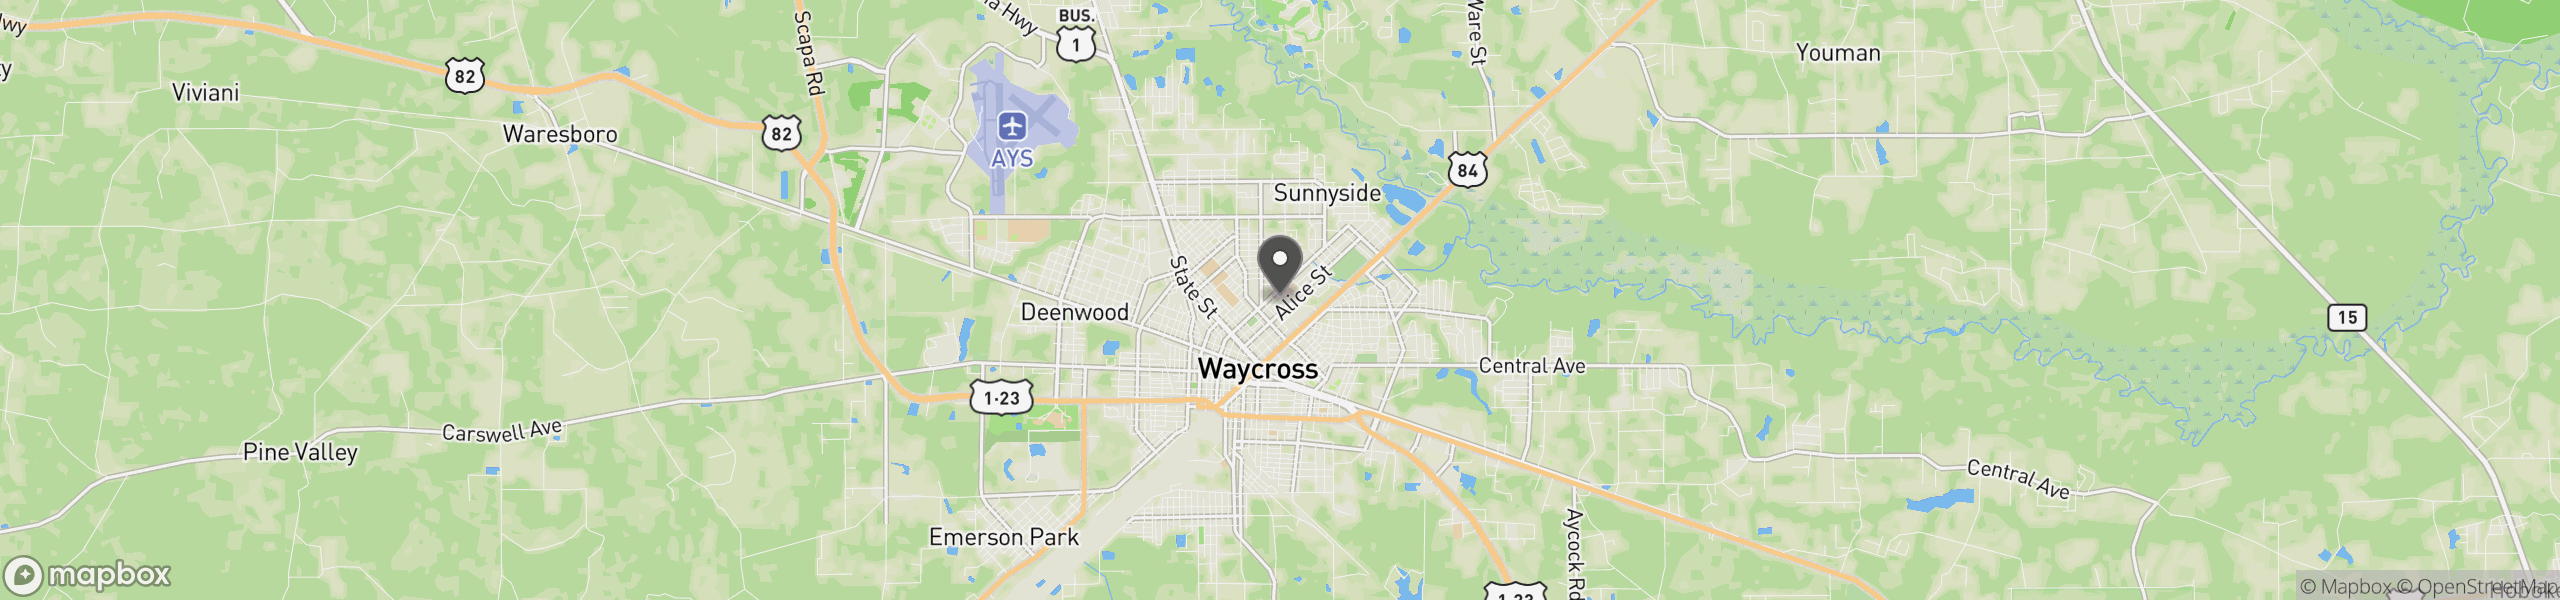 Waycross, GA